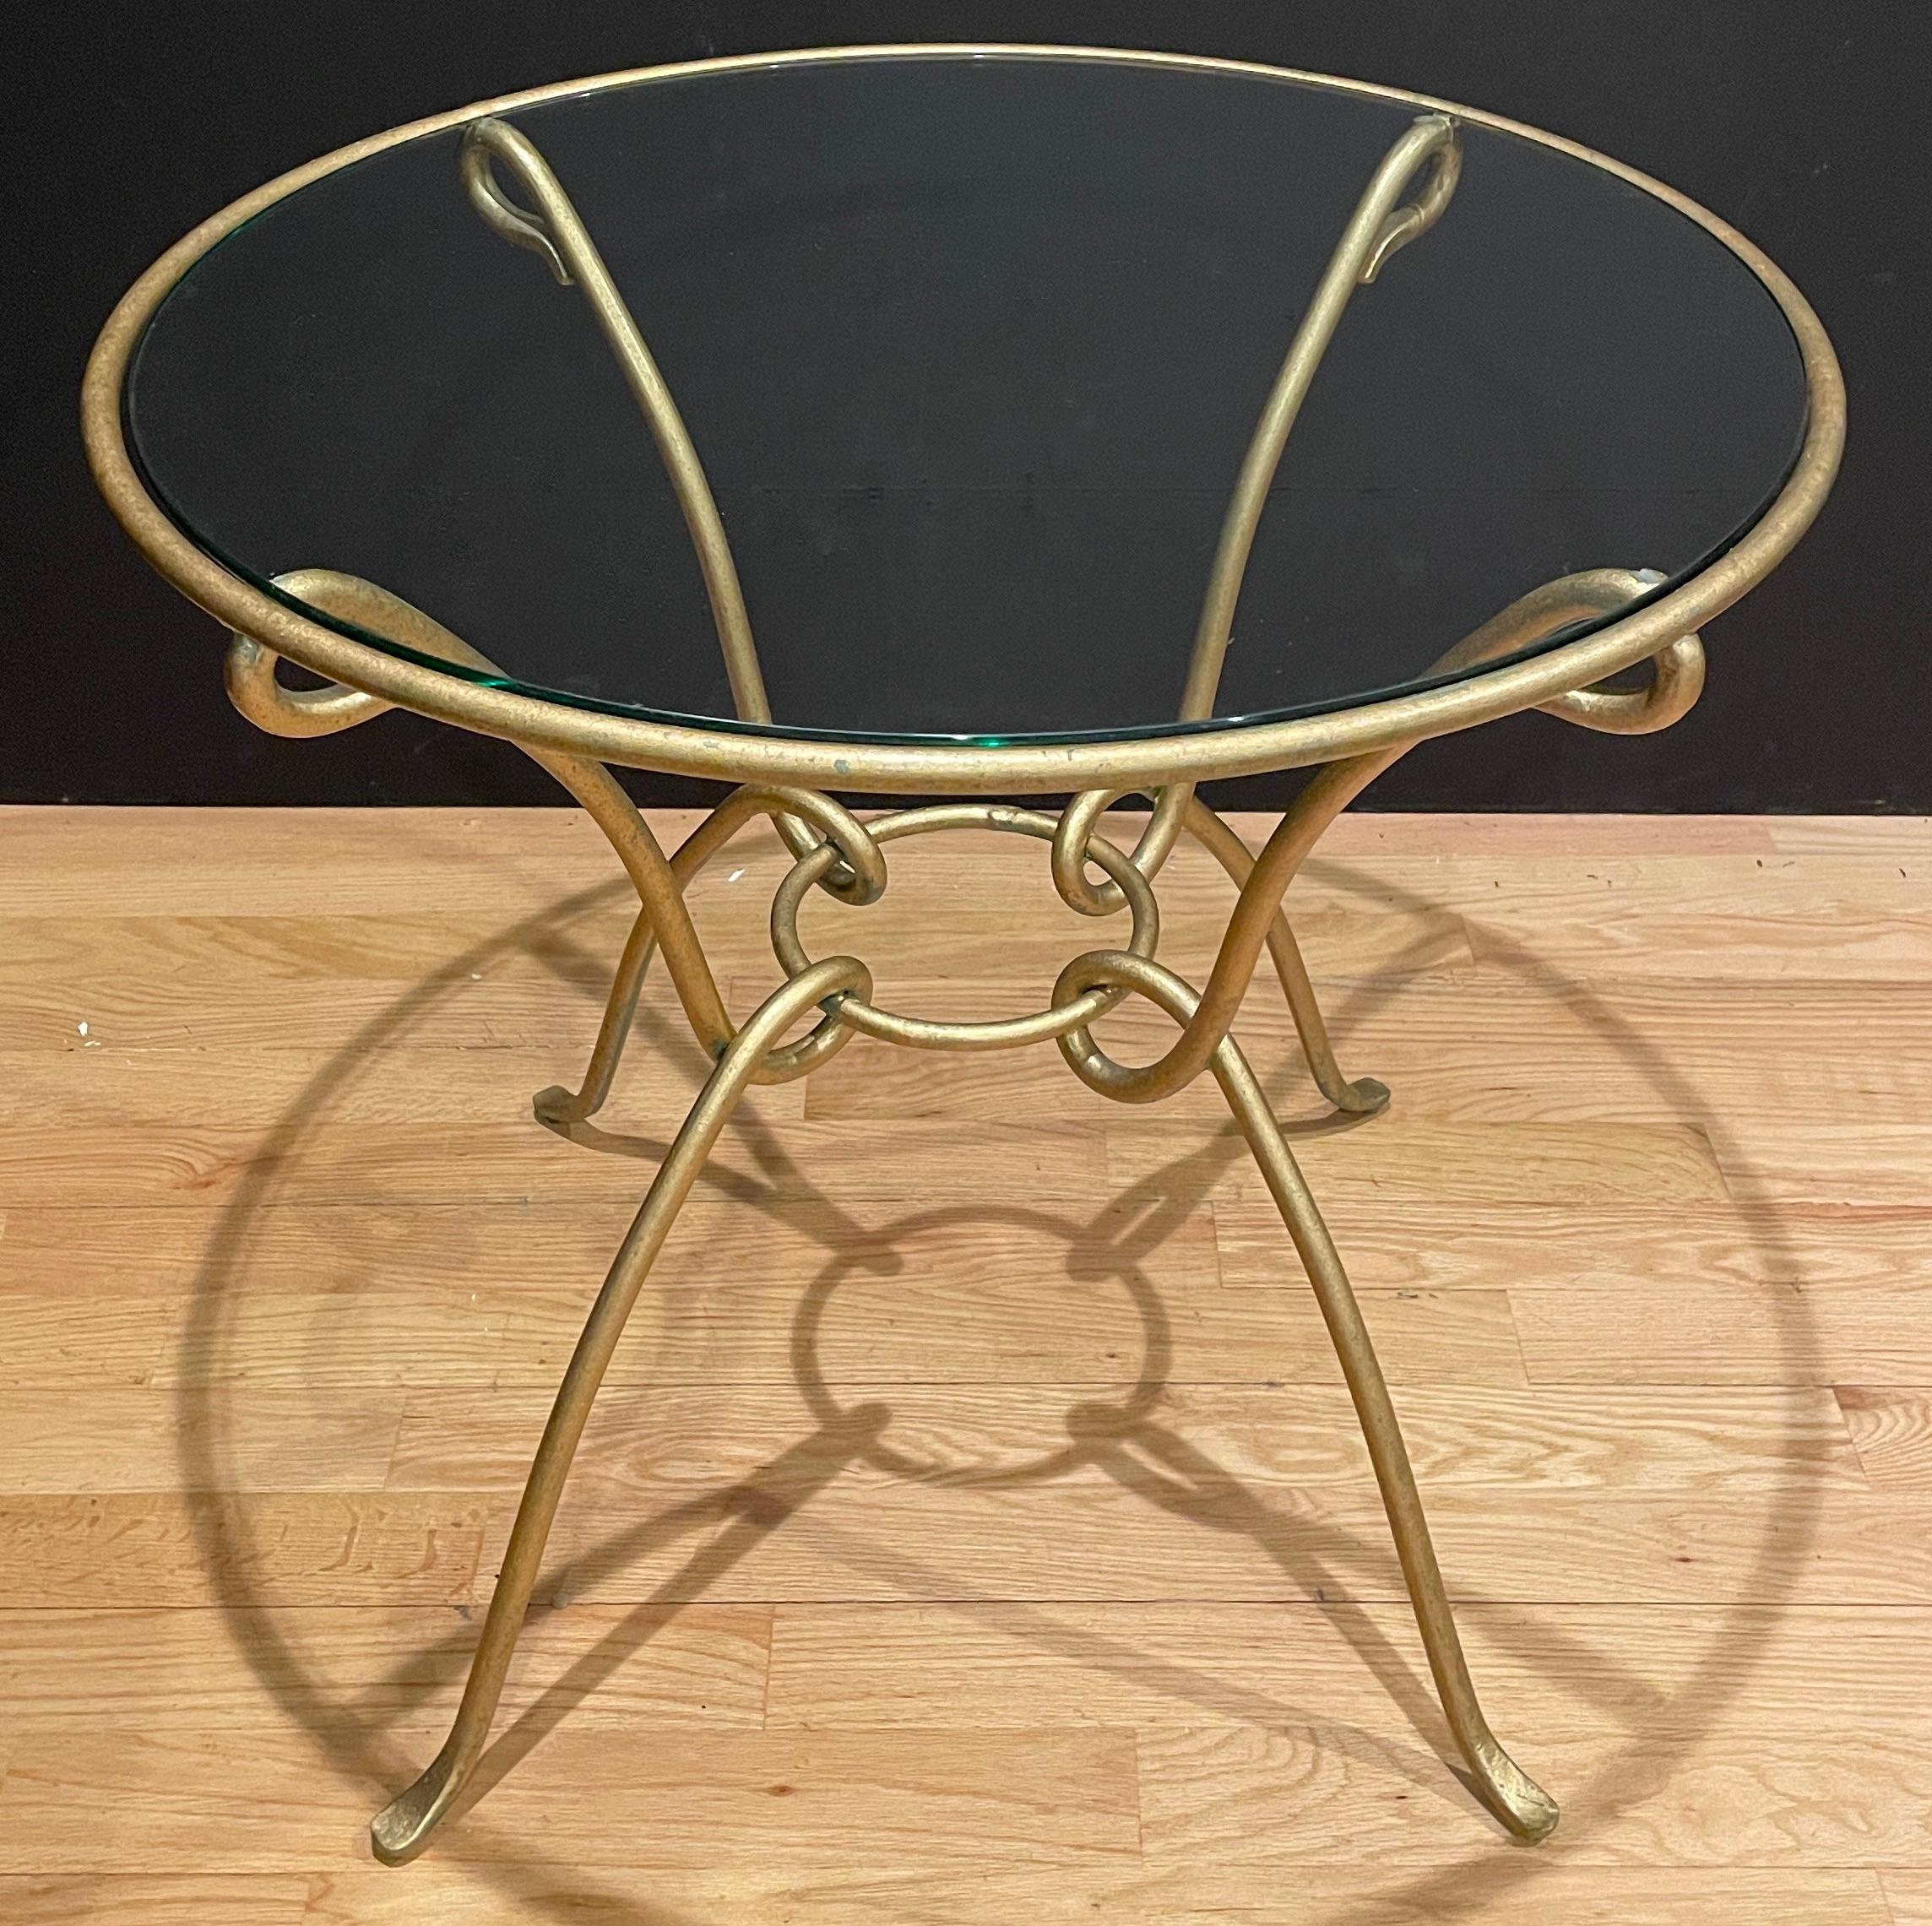 Cette table moderne en fer forgé, finition dorée, peut être utilisée comme table d'appoint ou comme table centrale. Le plateau en verre complète un look léger et élégant.